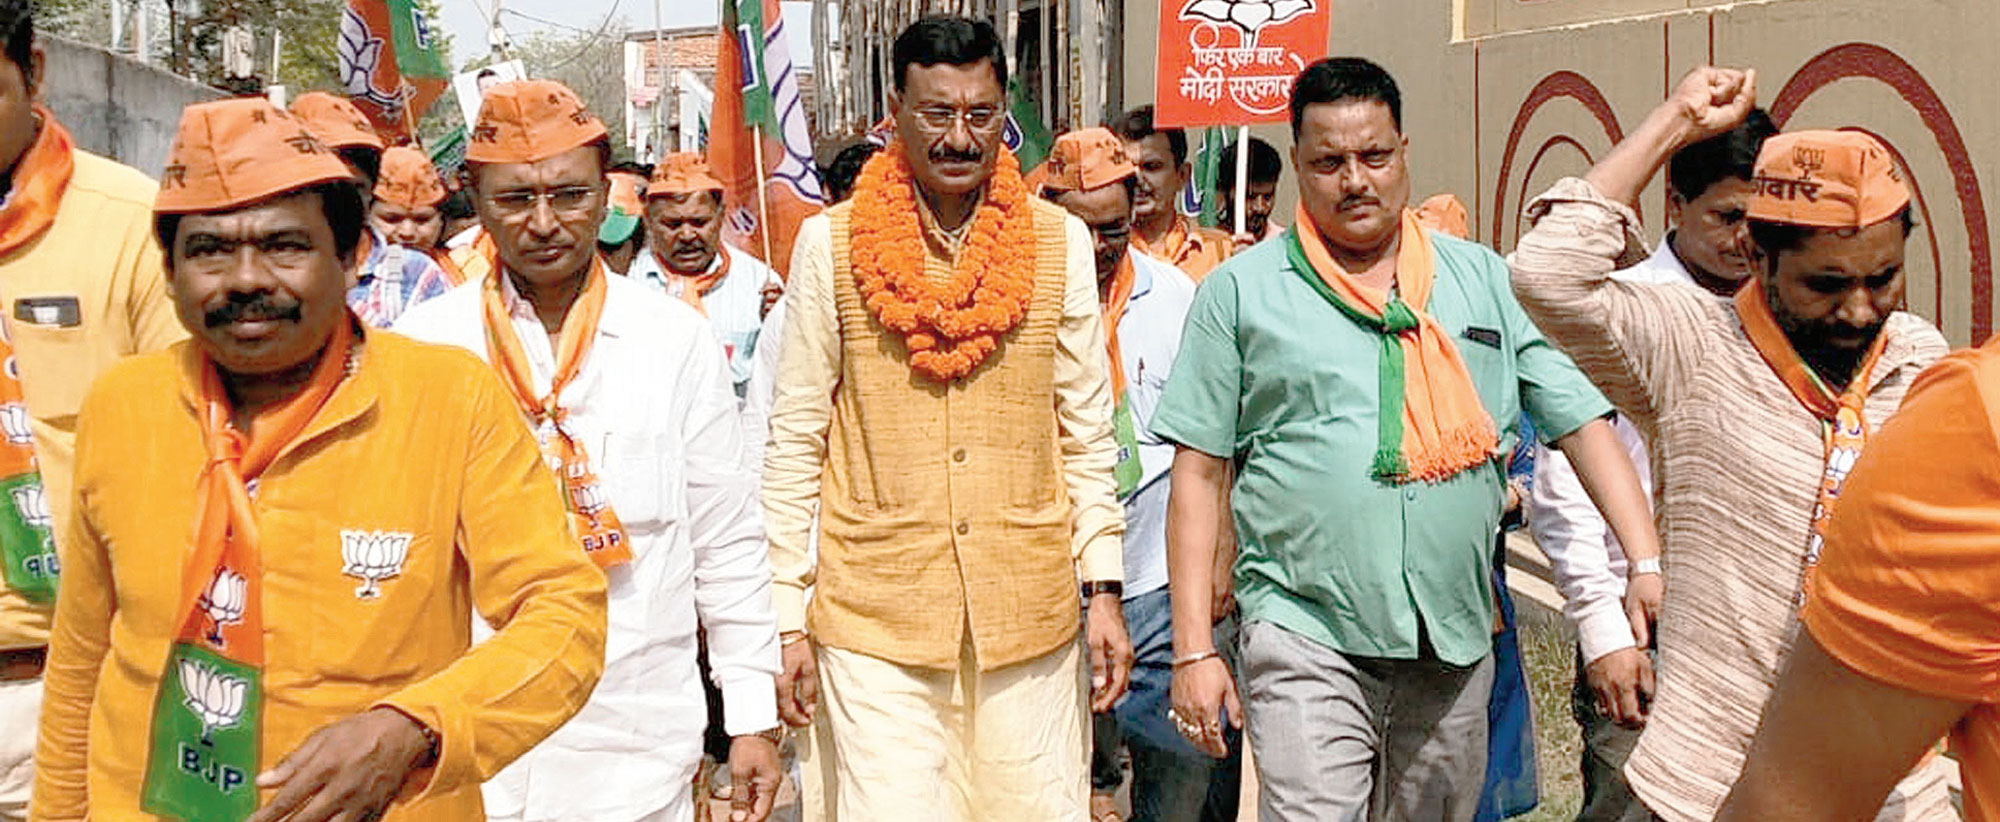 Sanjay Seth campaigns at Vikas Nagar in Ranchi on Thursday.